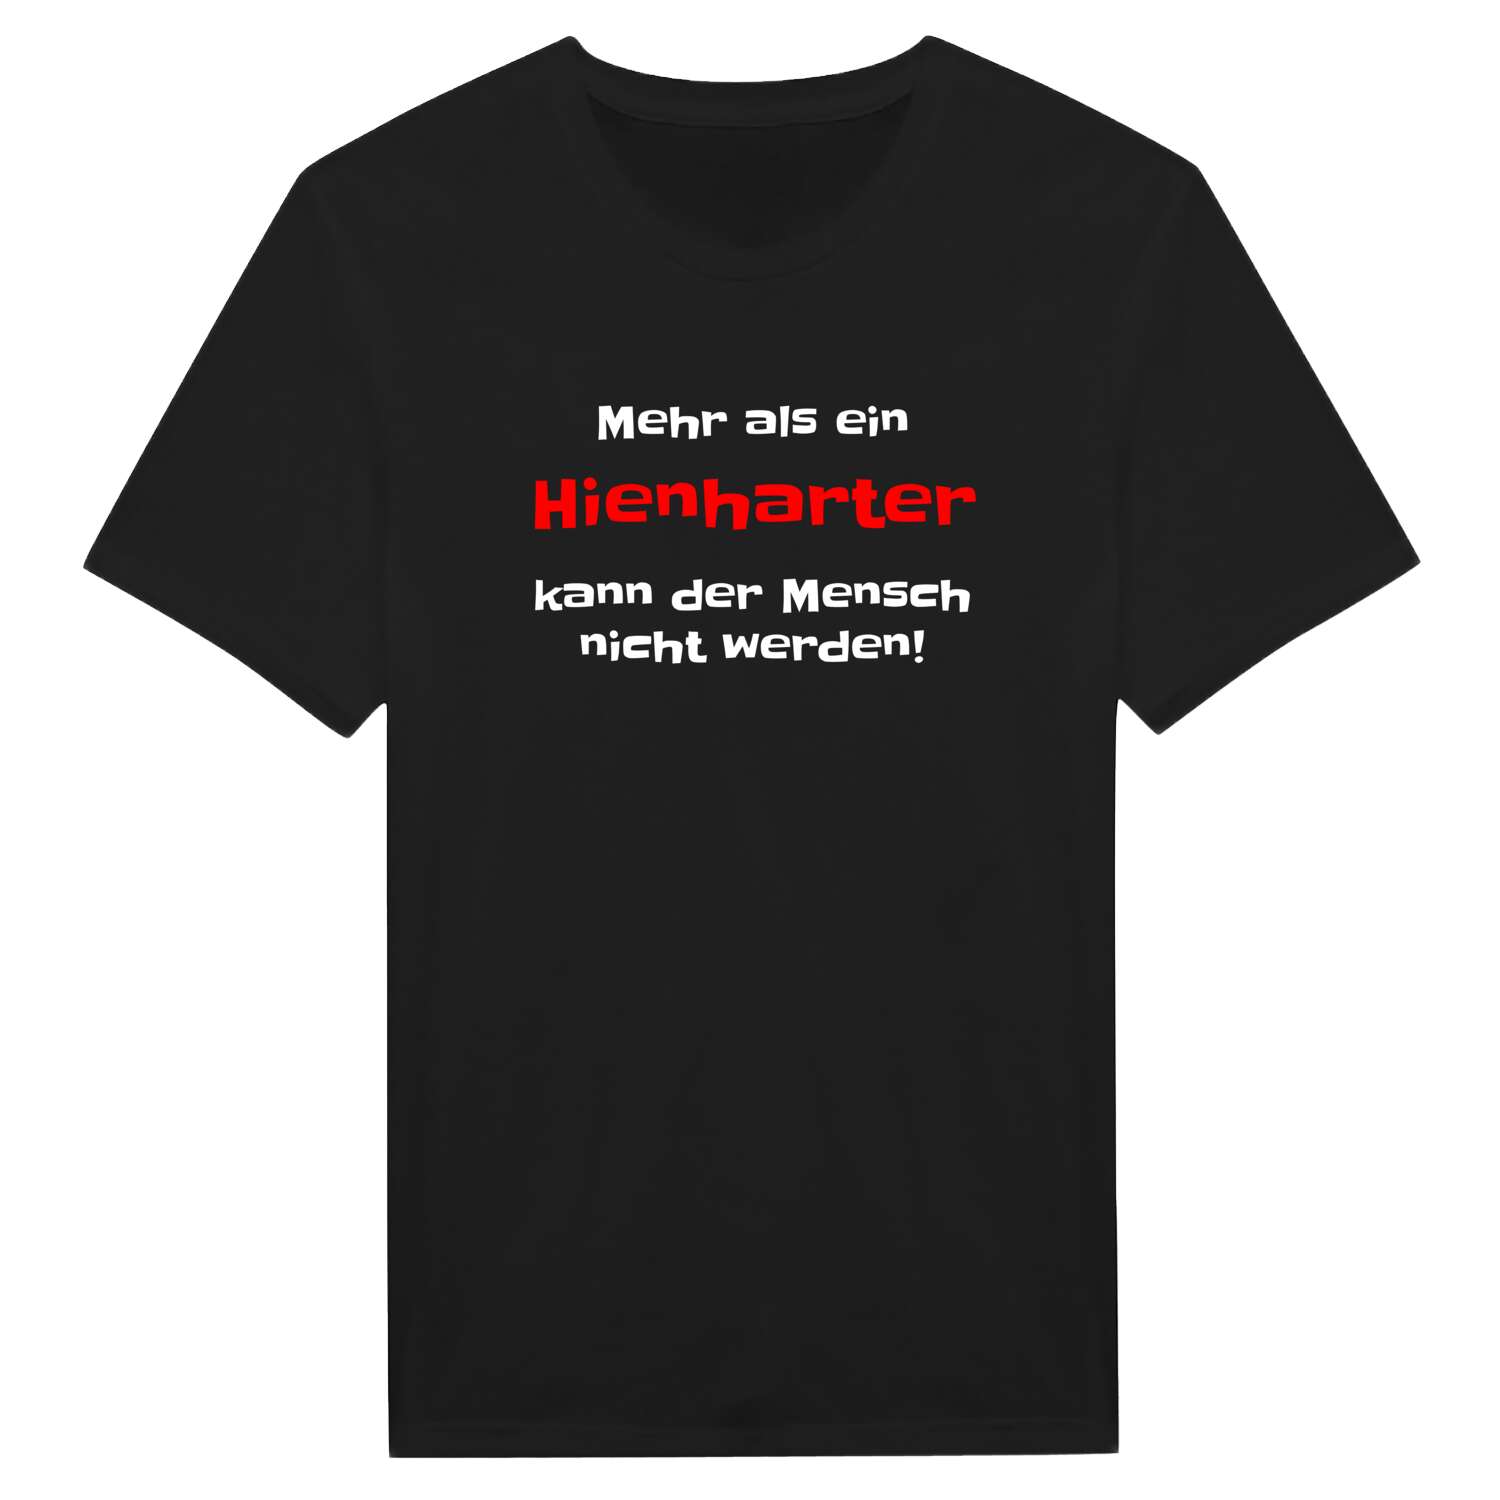 Hienhart T-Shirt »Mehr als ein«